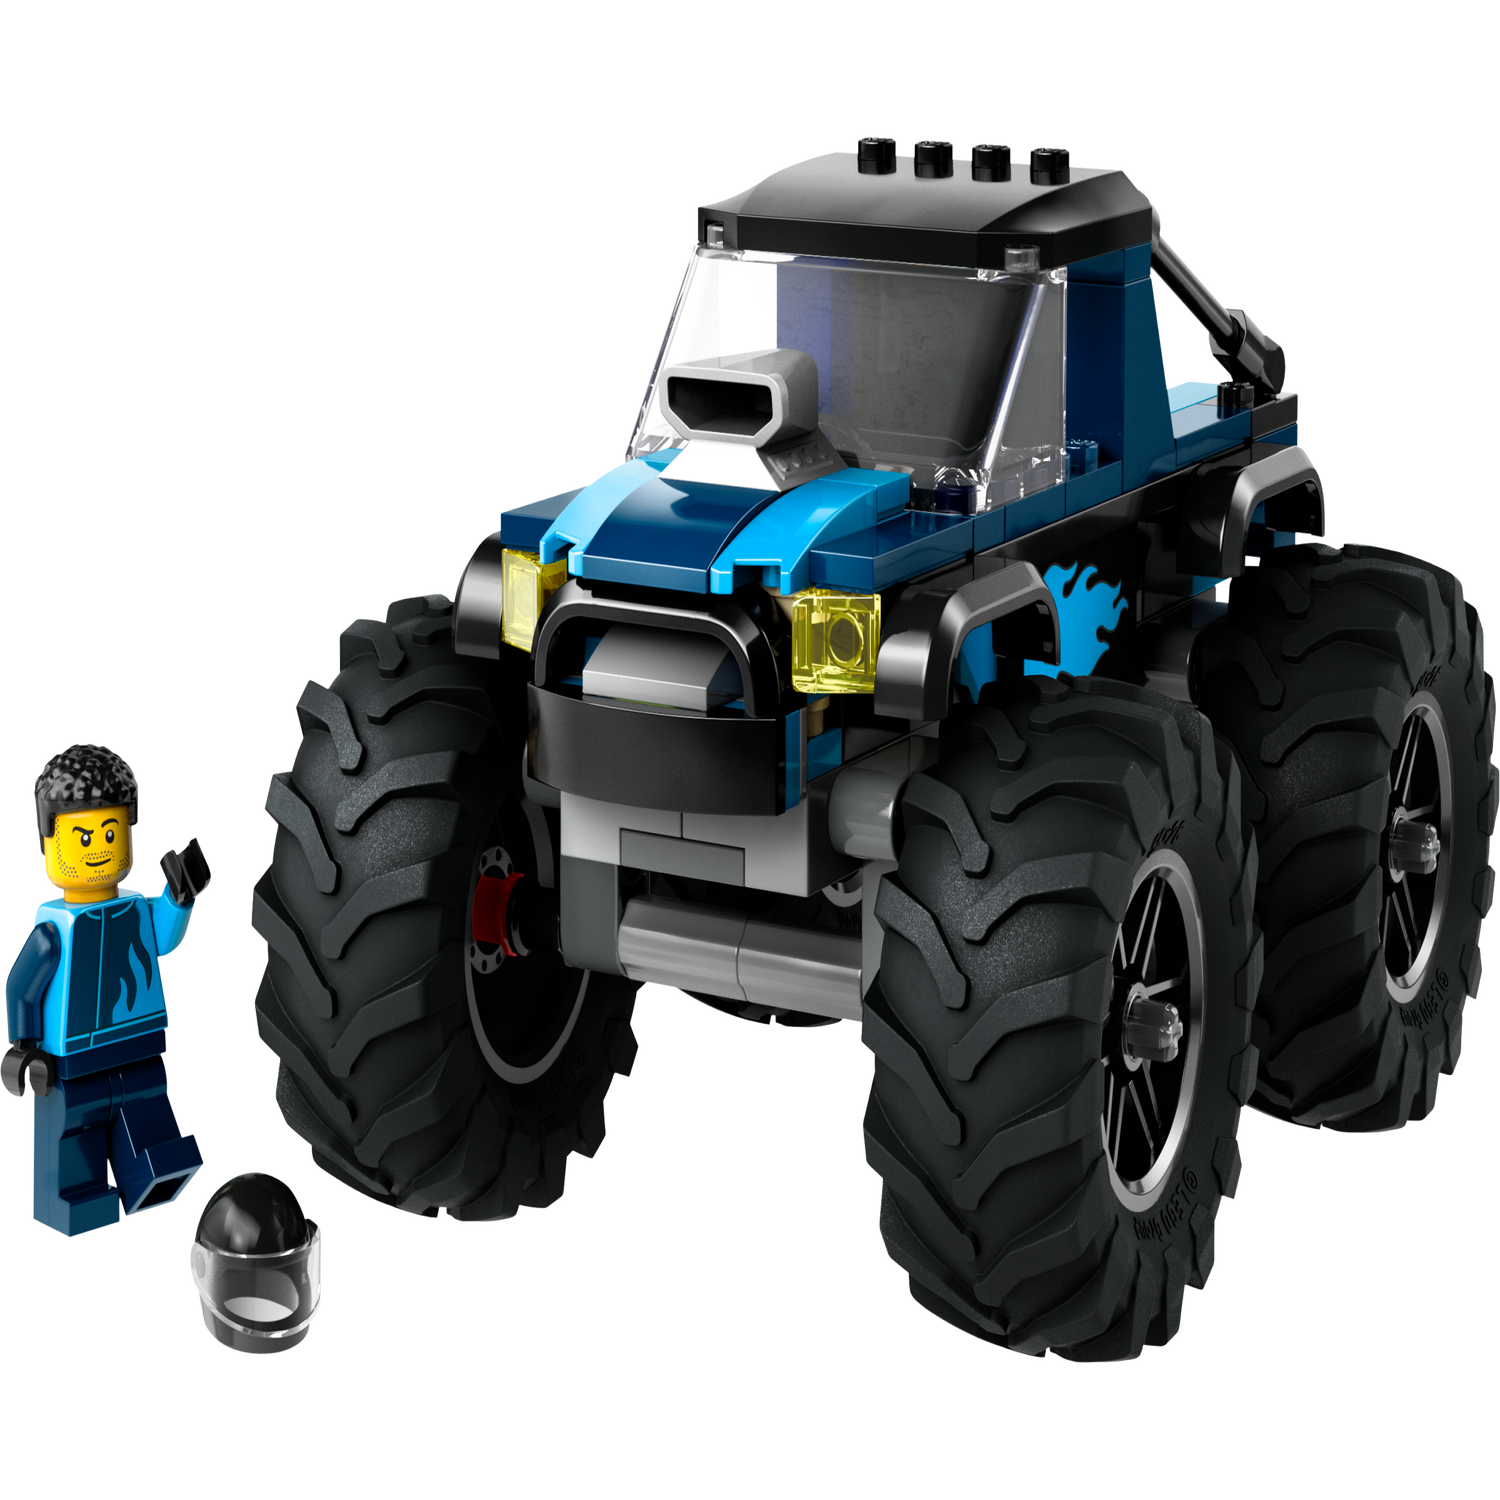 Jeu de construction - LEGO® City - Le Monster Truck - 55 pièces